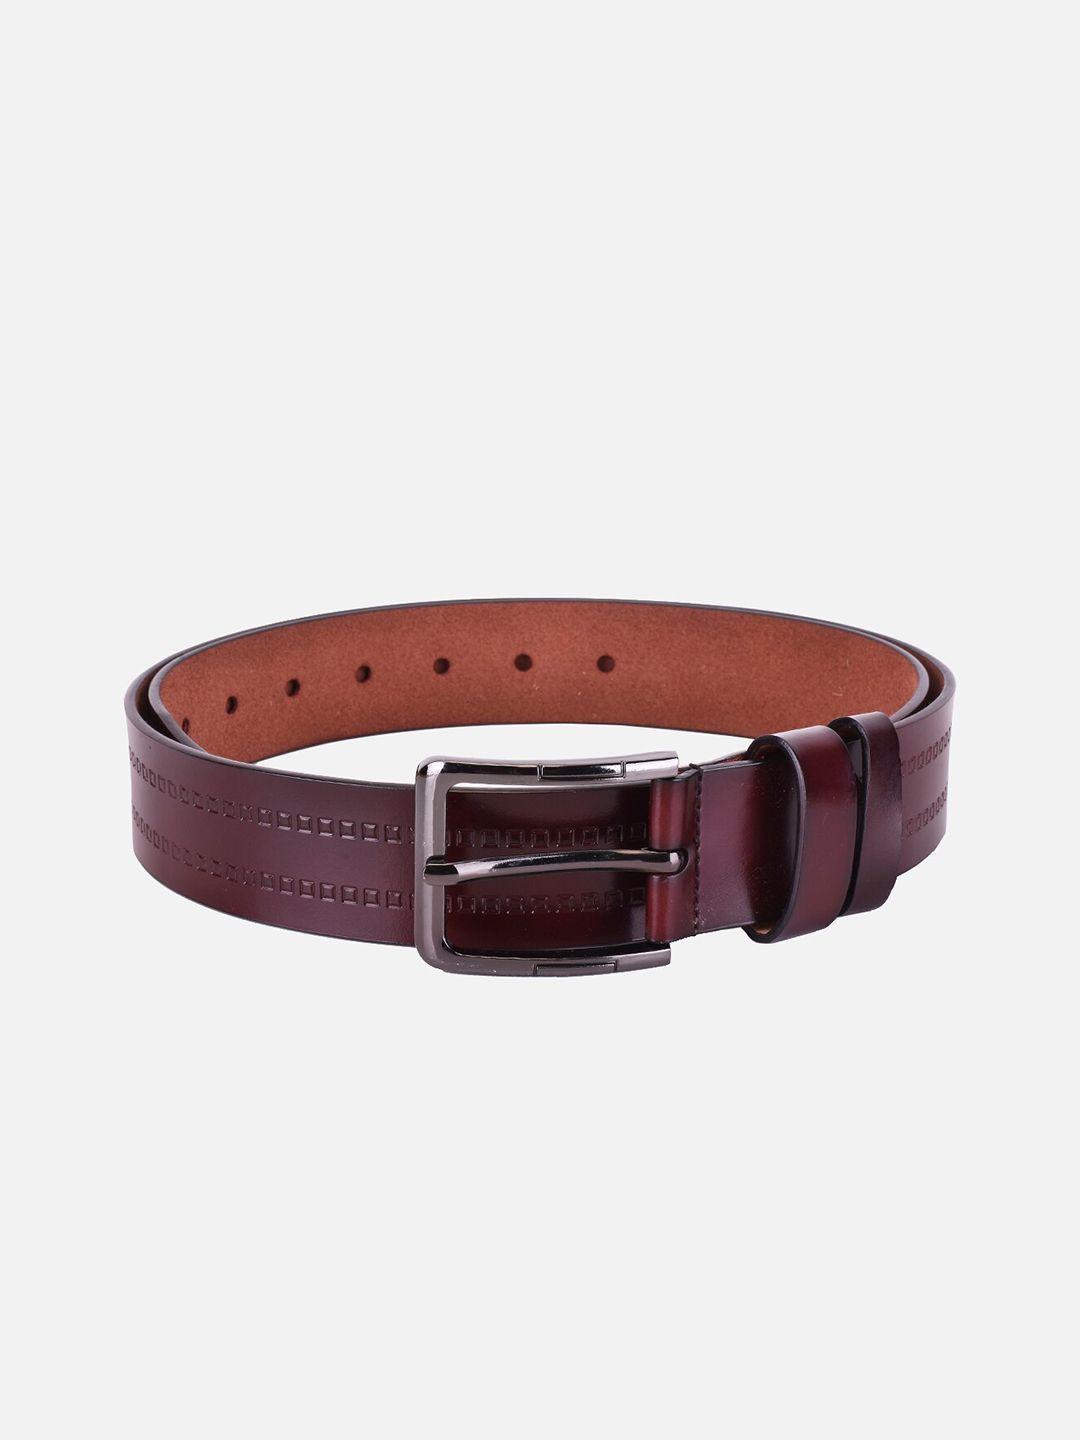 buckleup men brown leather belt